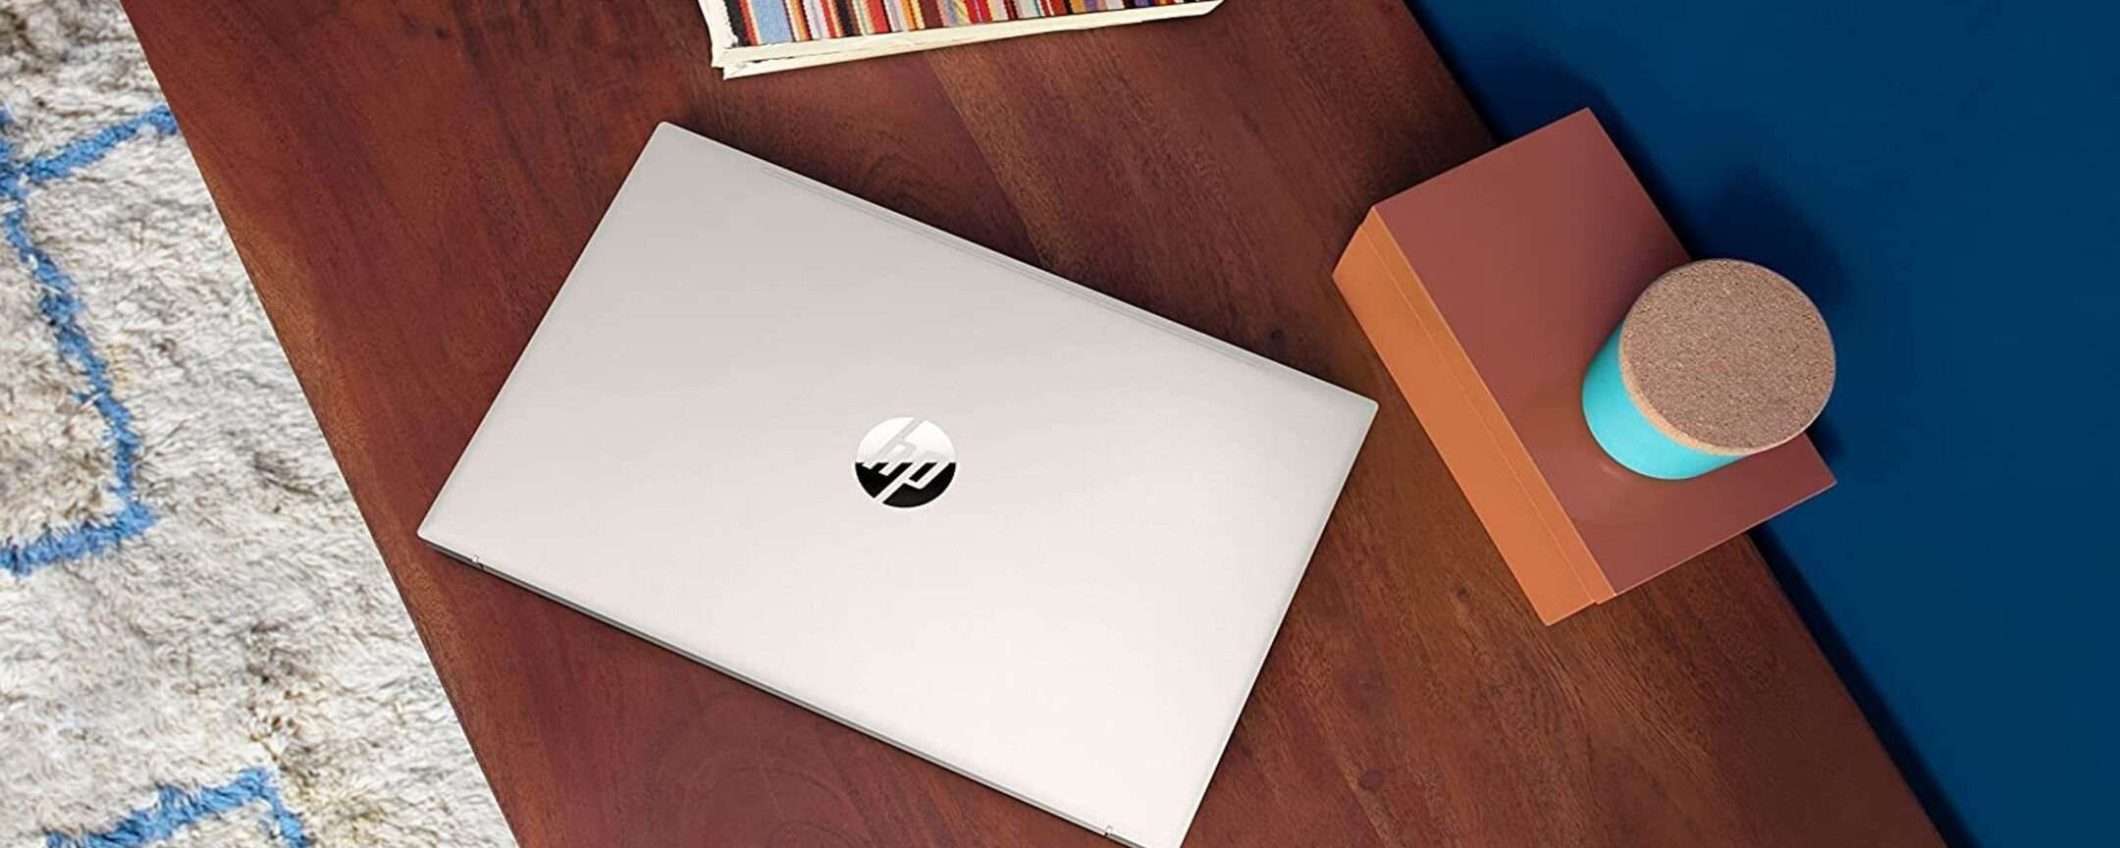 HP 15S è il notebook da comprare a meno di 500€ su Amazon (anche in 5 rate)